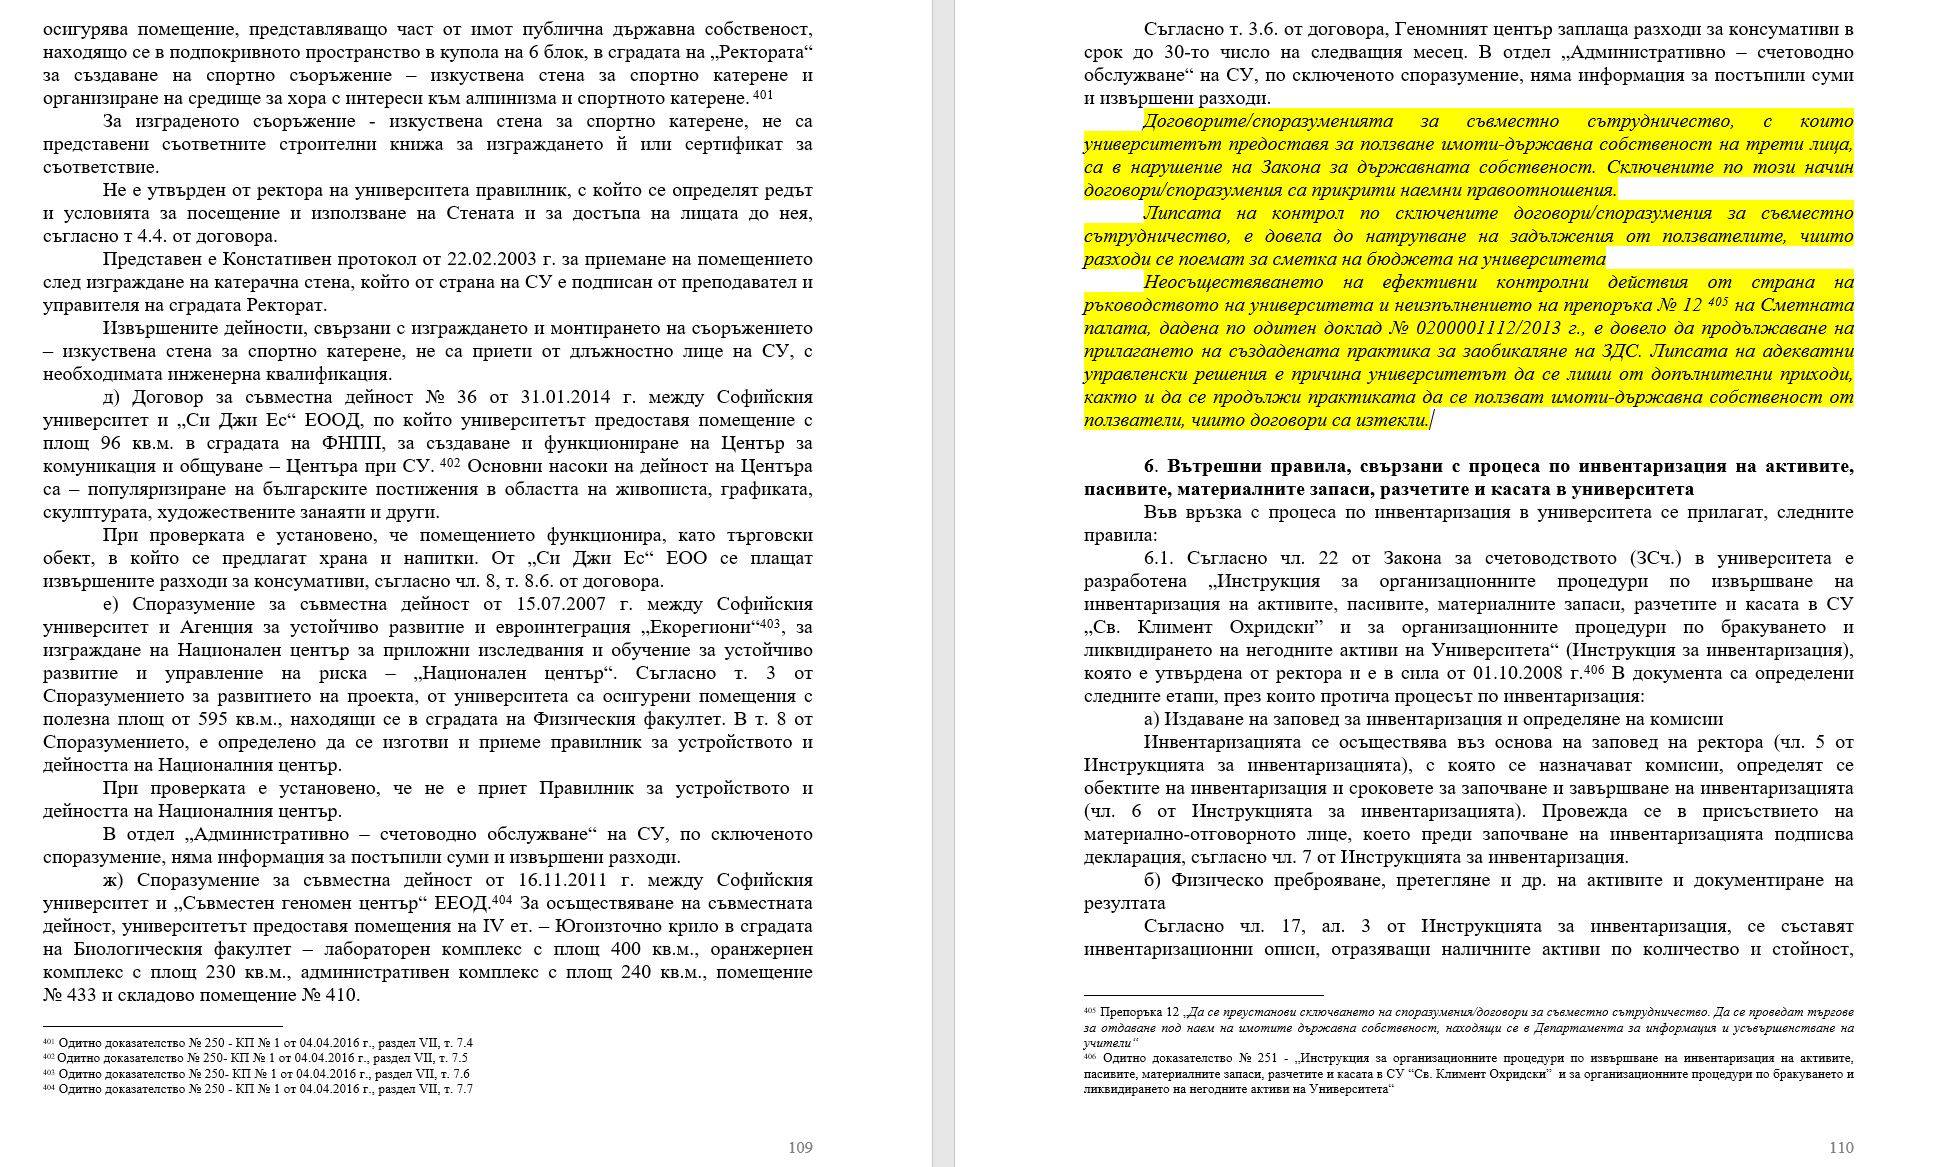 Доклад на Сметната палата, стр. 109-110